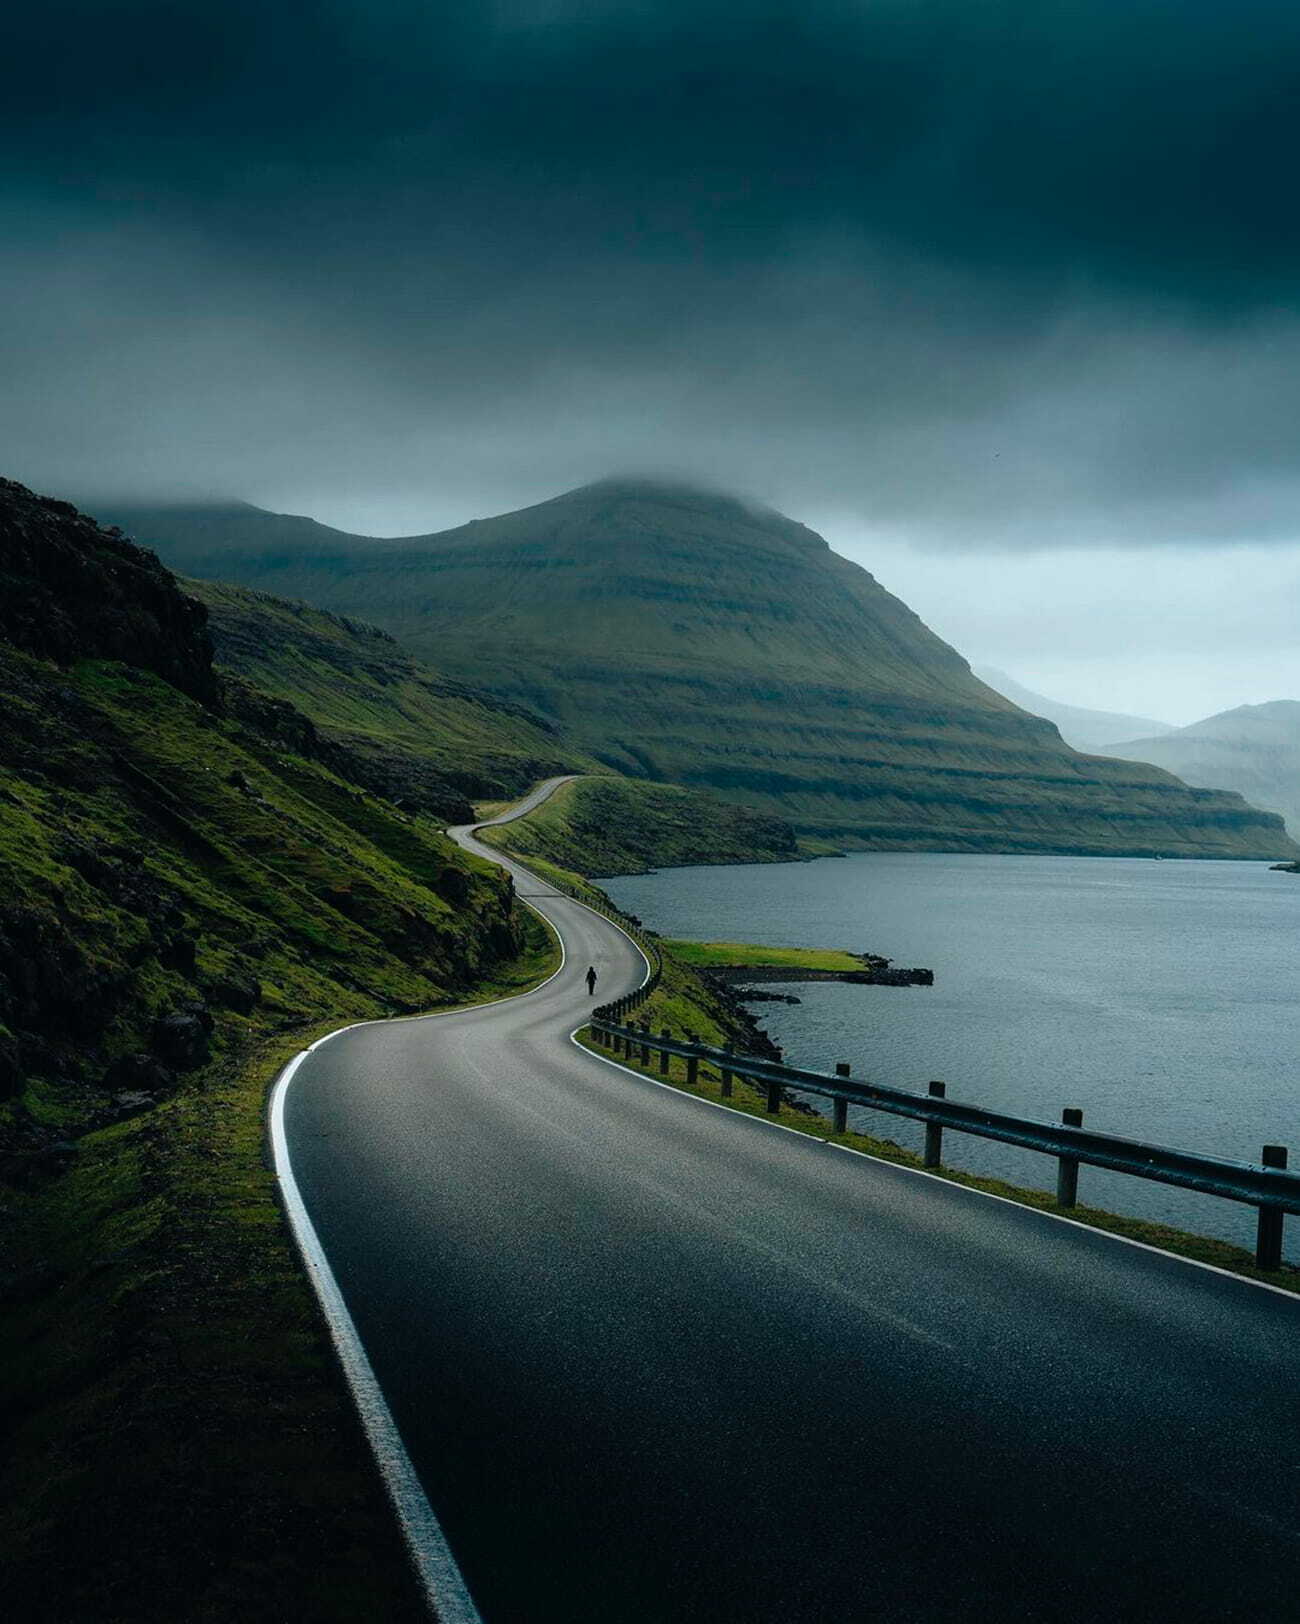 Faroe Islands III